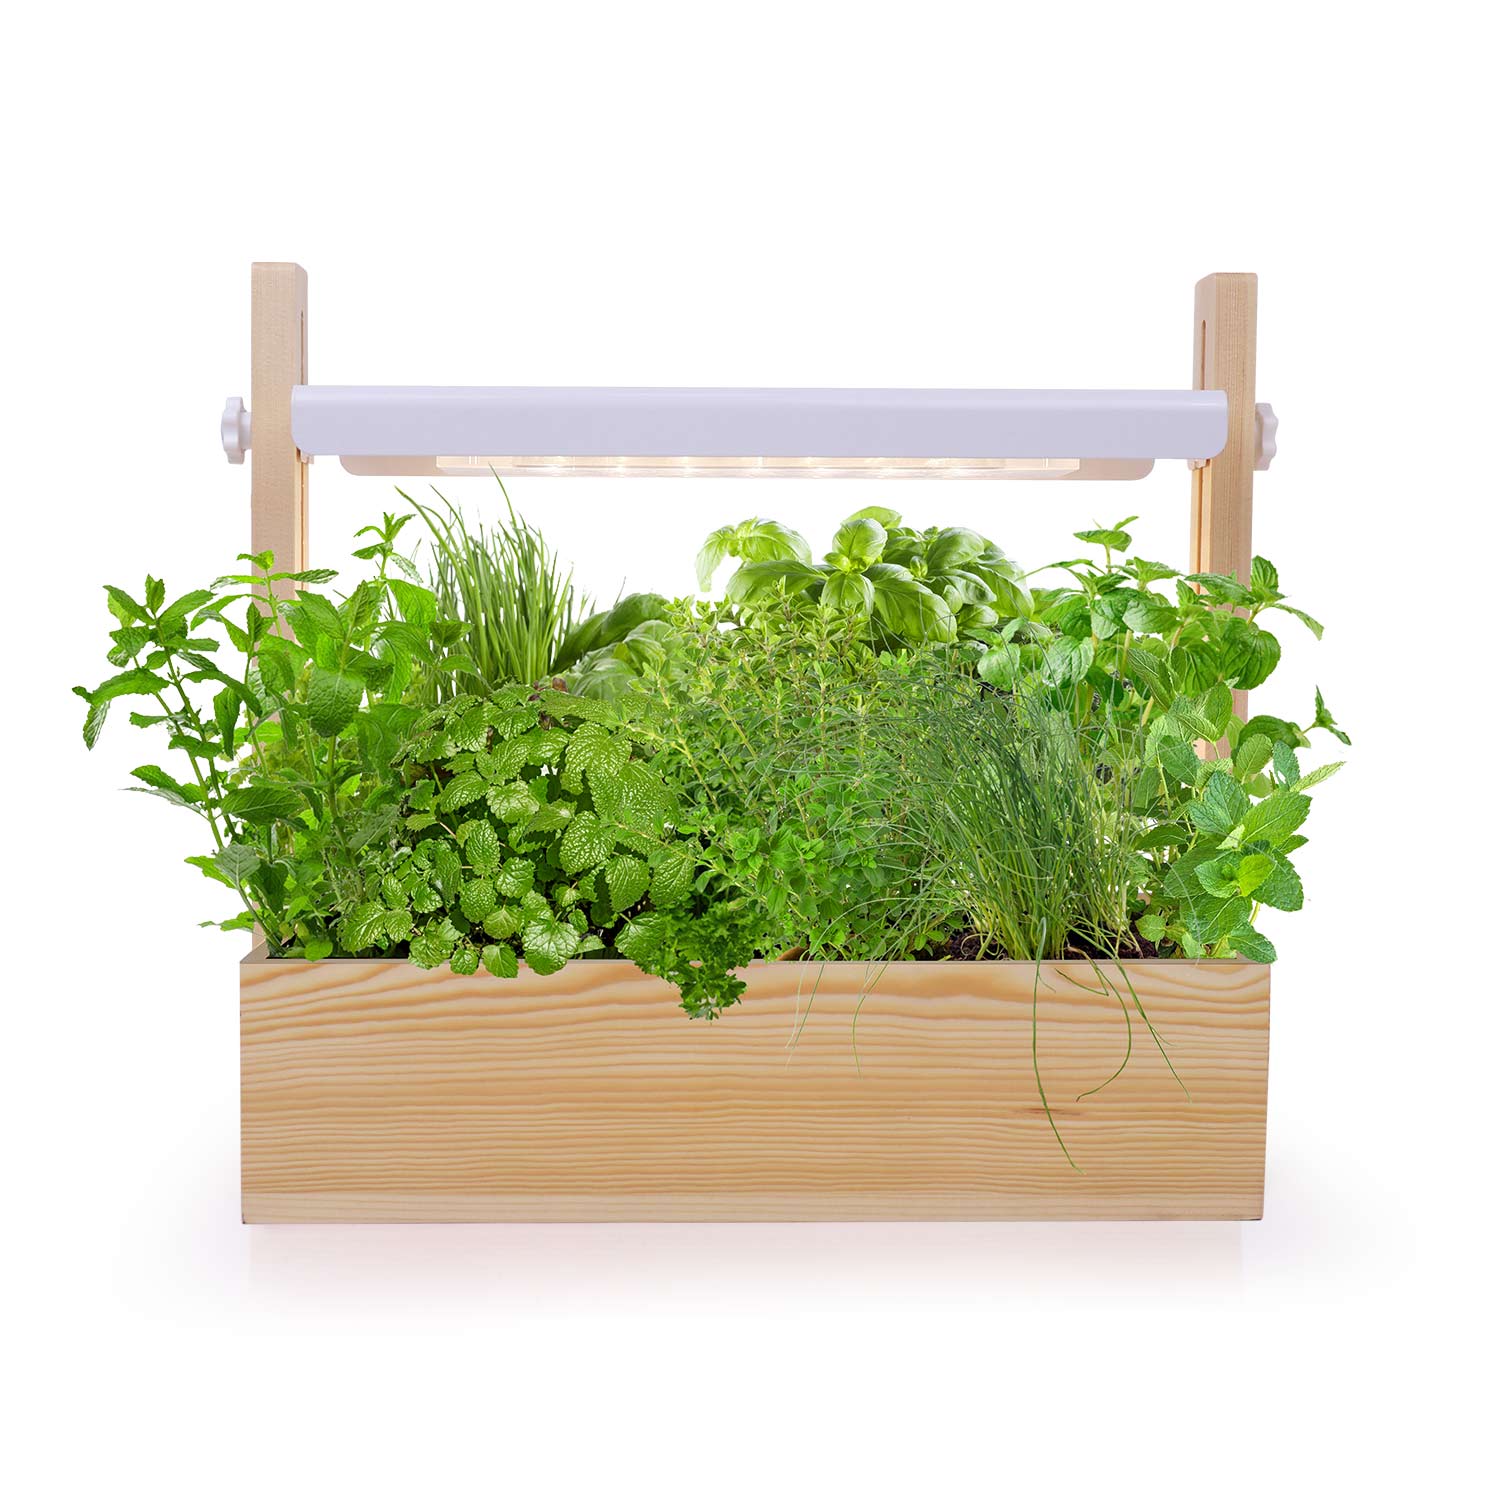 MG412 indoor herb mini gadheni hydroponic zvidyarwa yakazara spectrum yakatungamira Garden Starter Kit